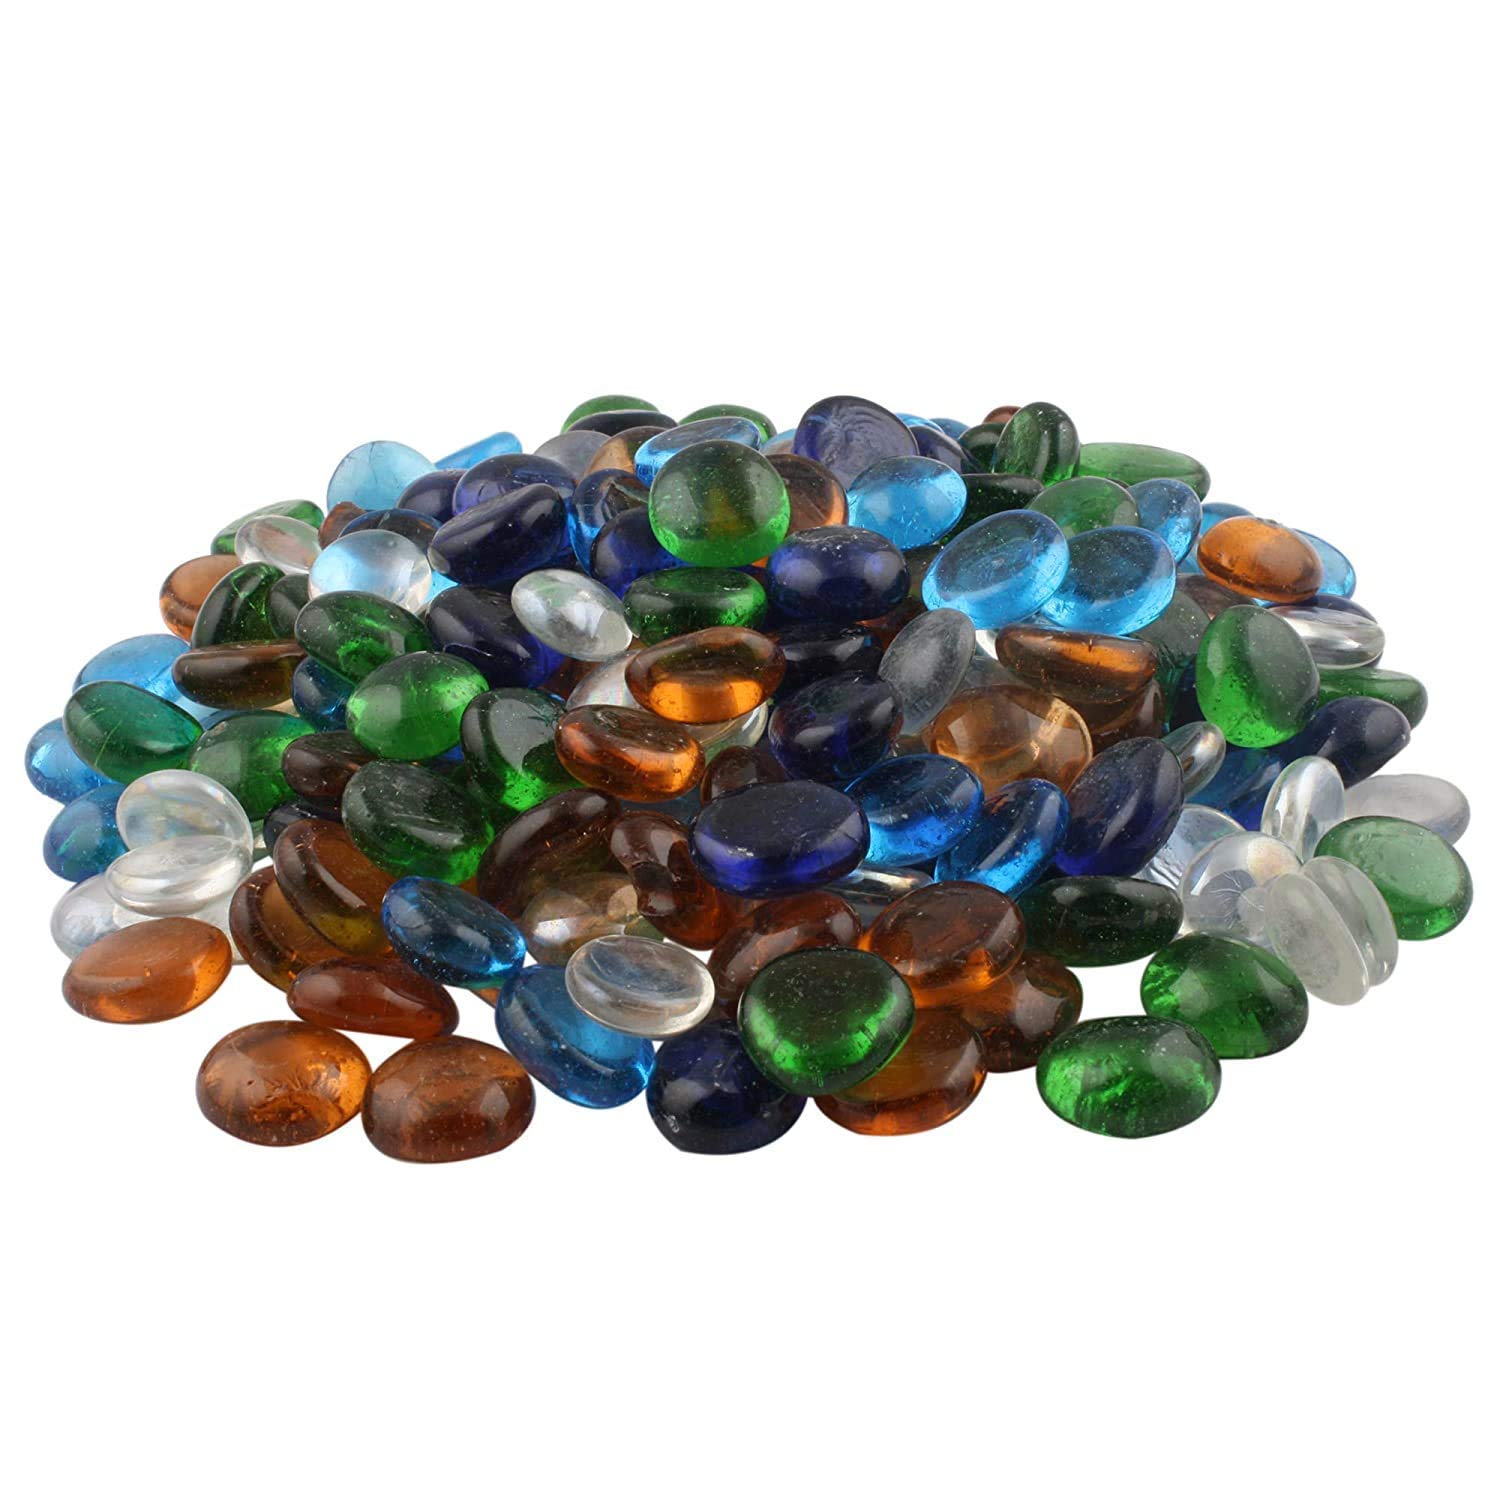 Color Stone Transparent Half Round Aquarium Glass Pebbles - Buy ...